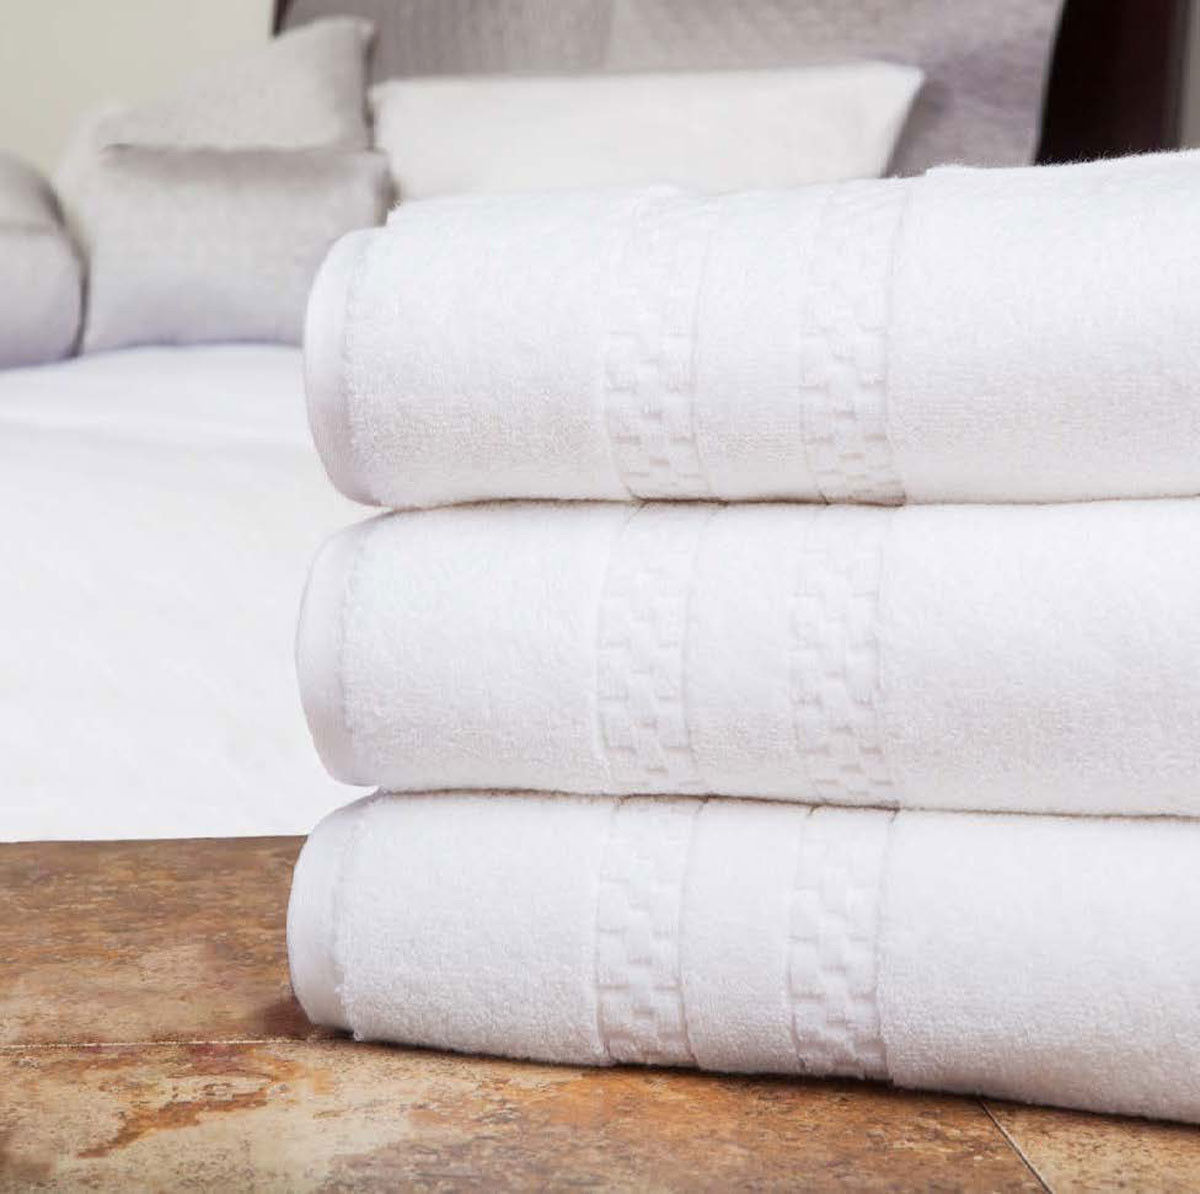 Where are the villa di sorrento luxury towels made?